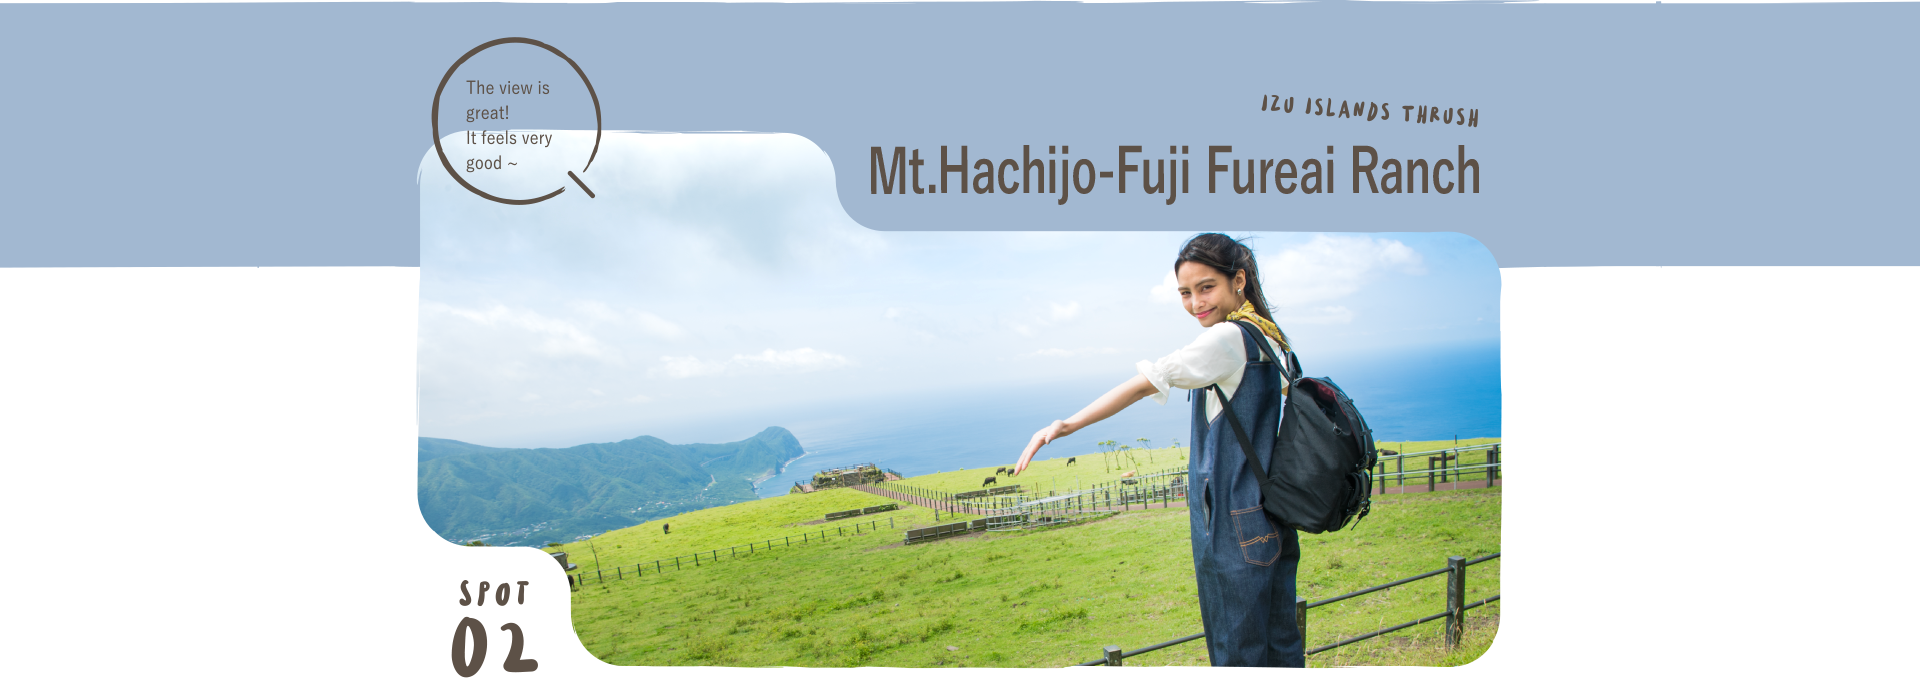 Mt.Hachijo-Fuji Fureai Ranch